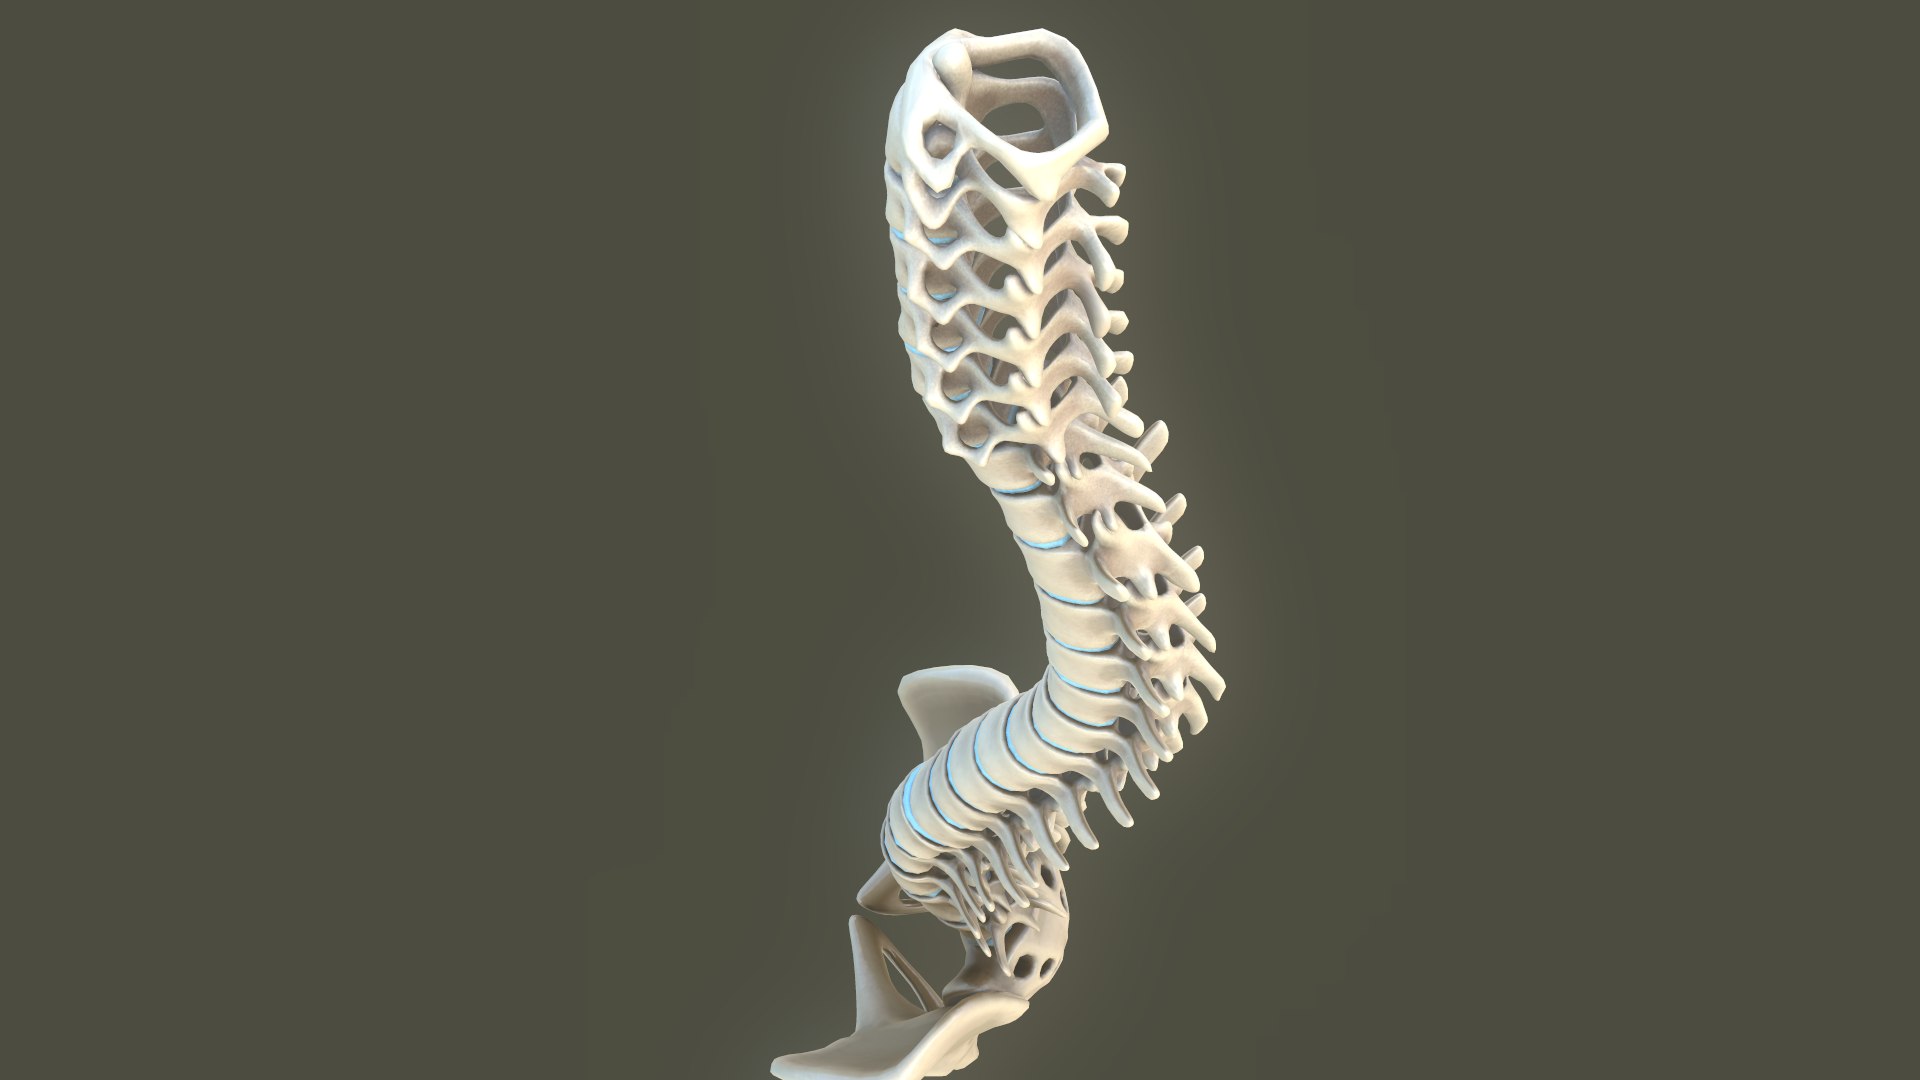 Spine Anatomy Spinal Column 3D Model - TurboSquid 1427511